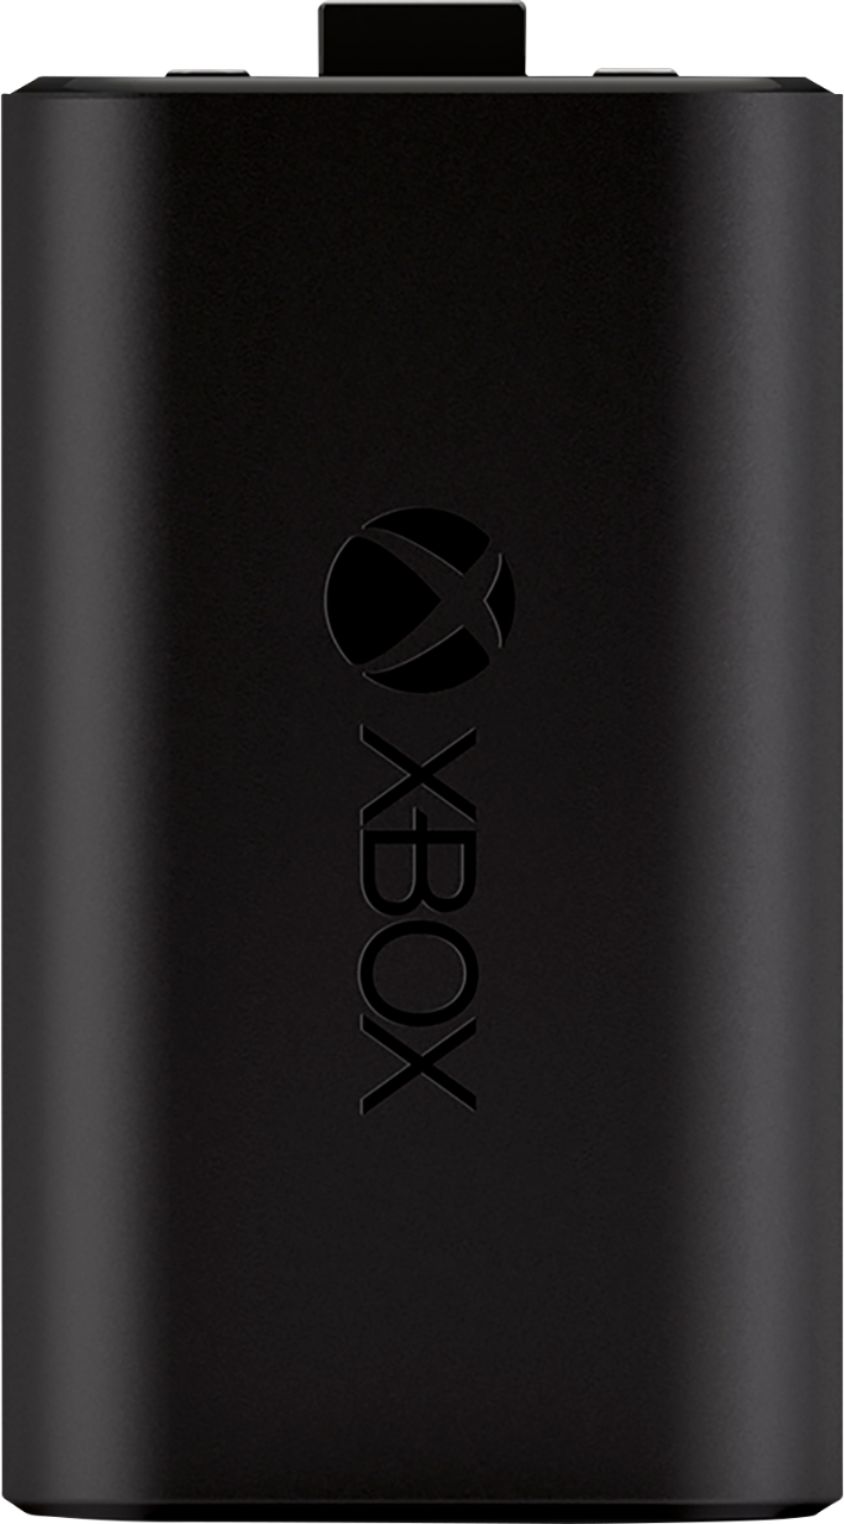 xbox series x plug and play